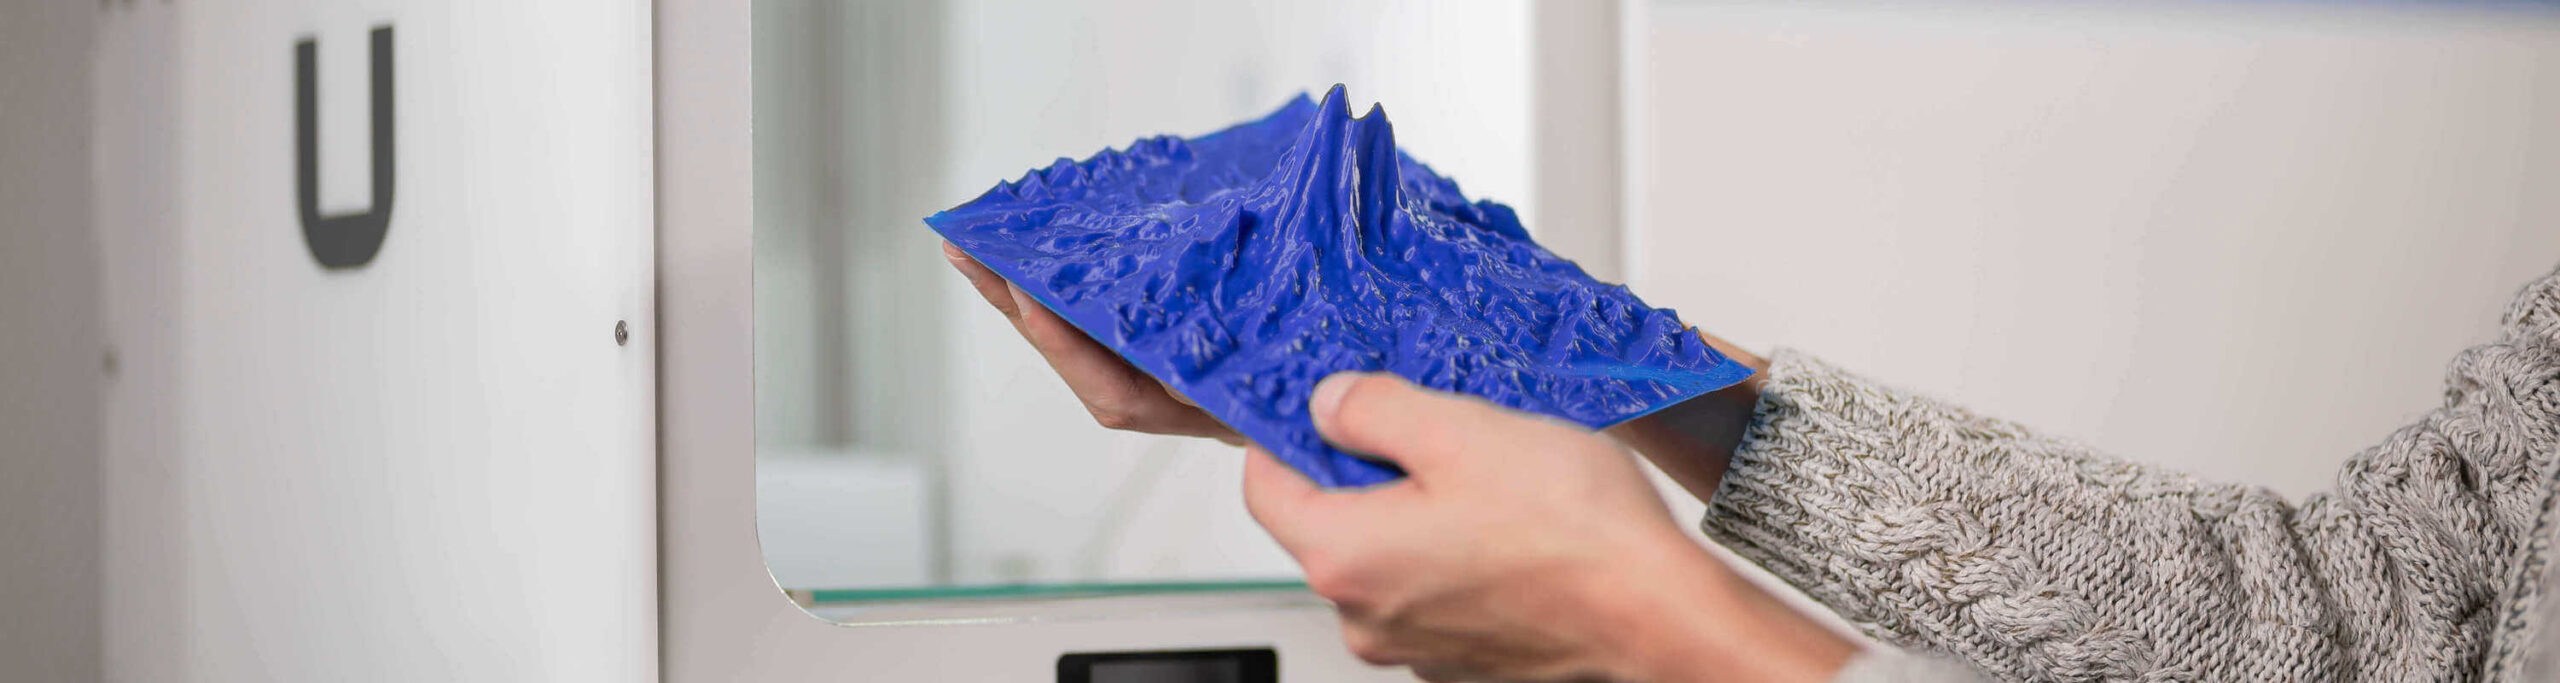 A 3D printed model